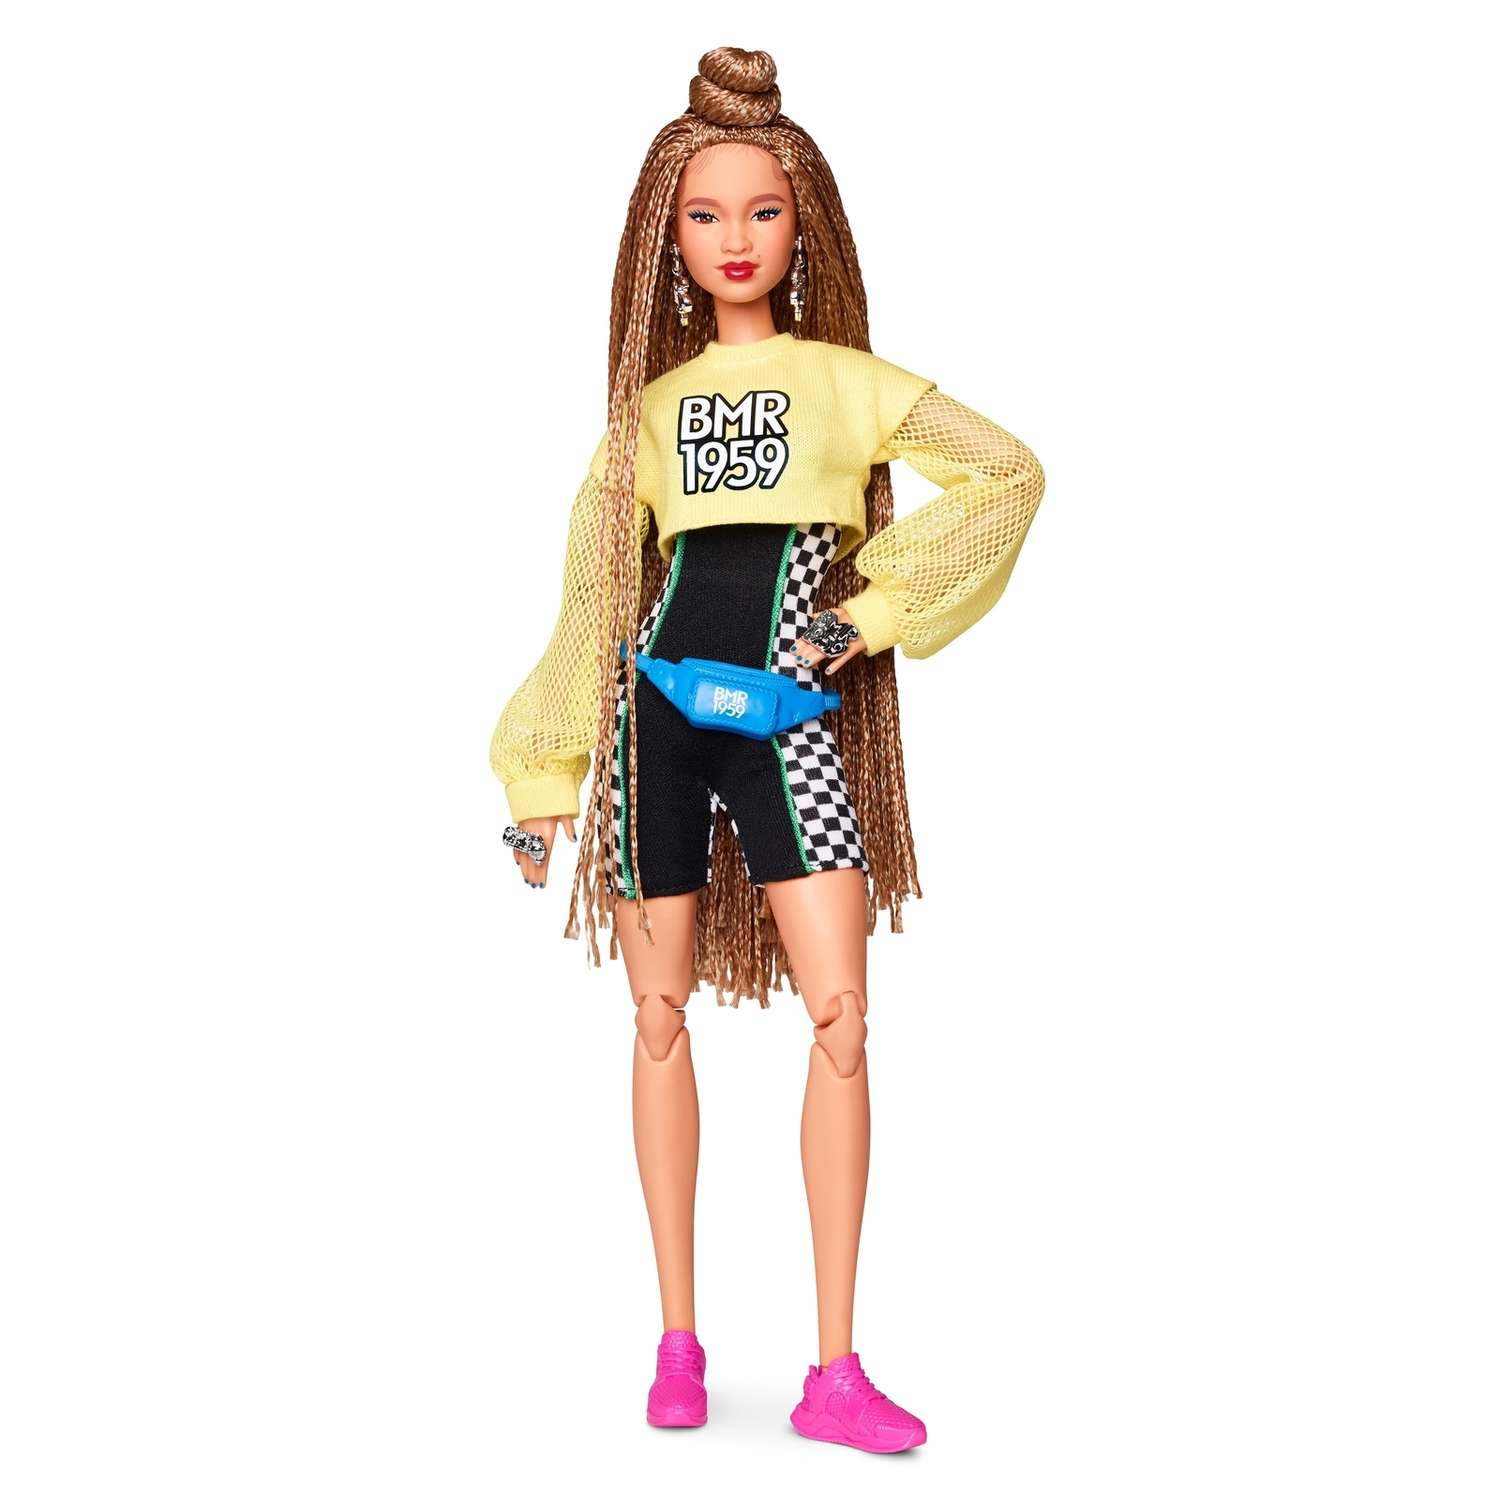 Кукла Barbie коллекционная BMR1959 GHT91 GHT91 - фото 5